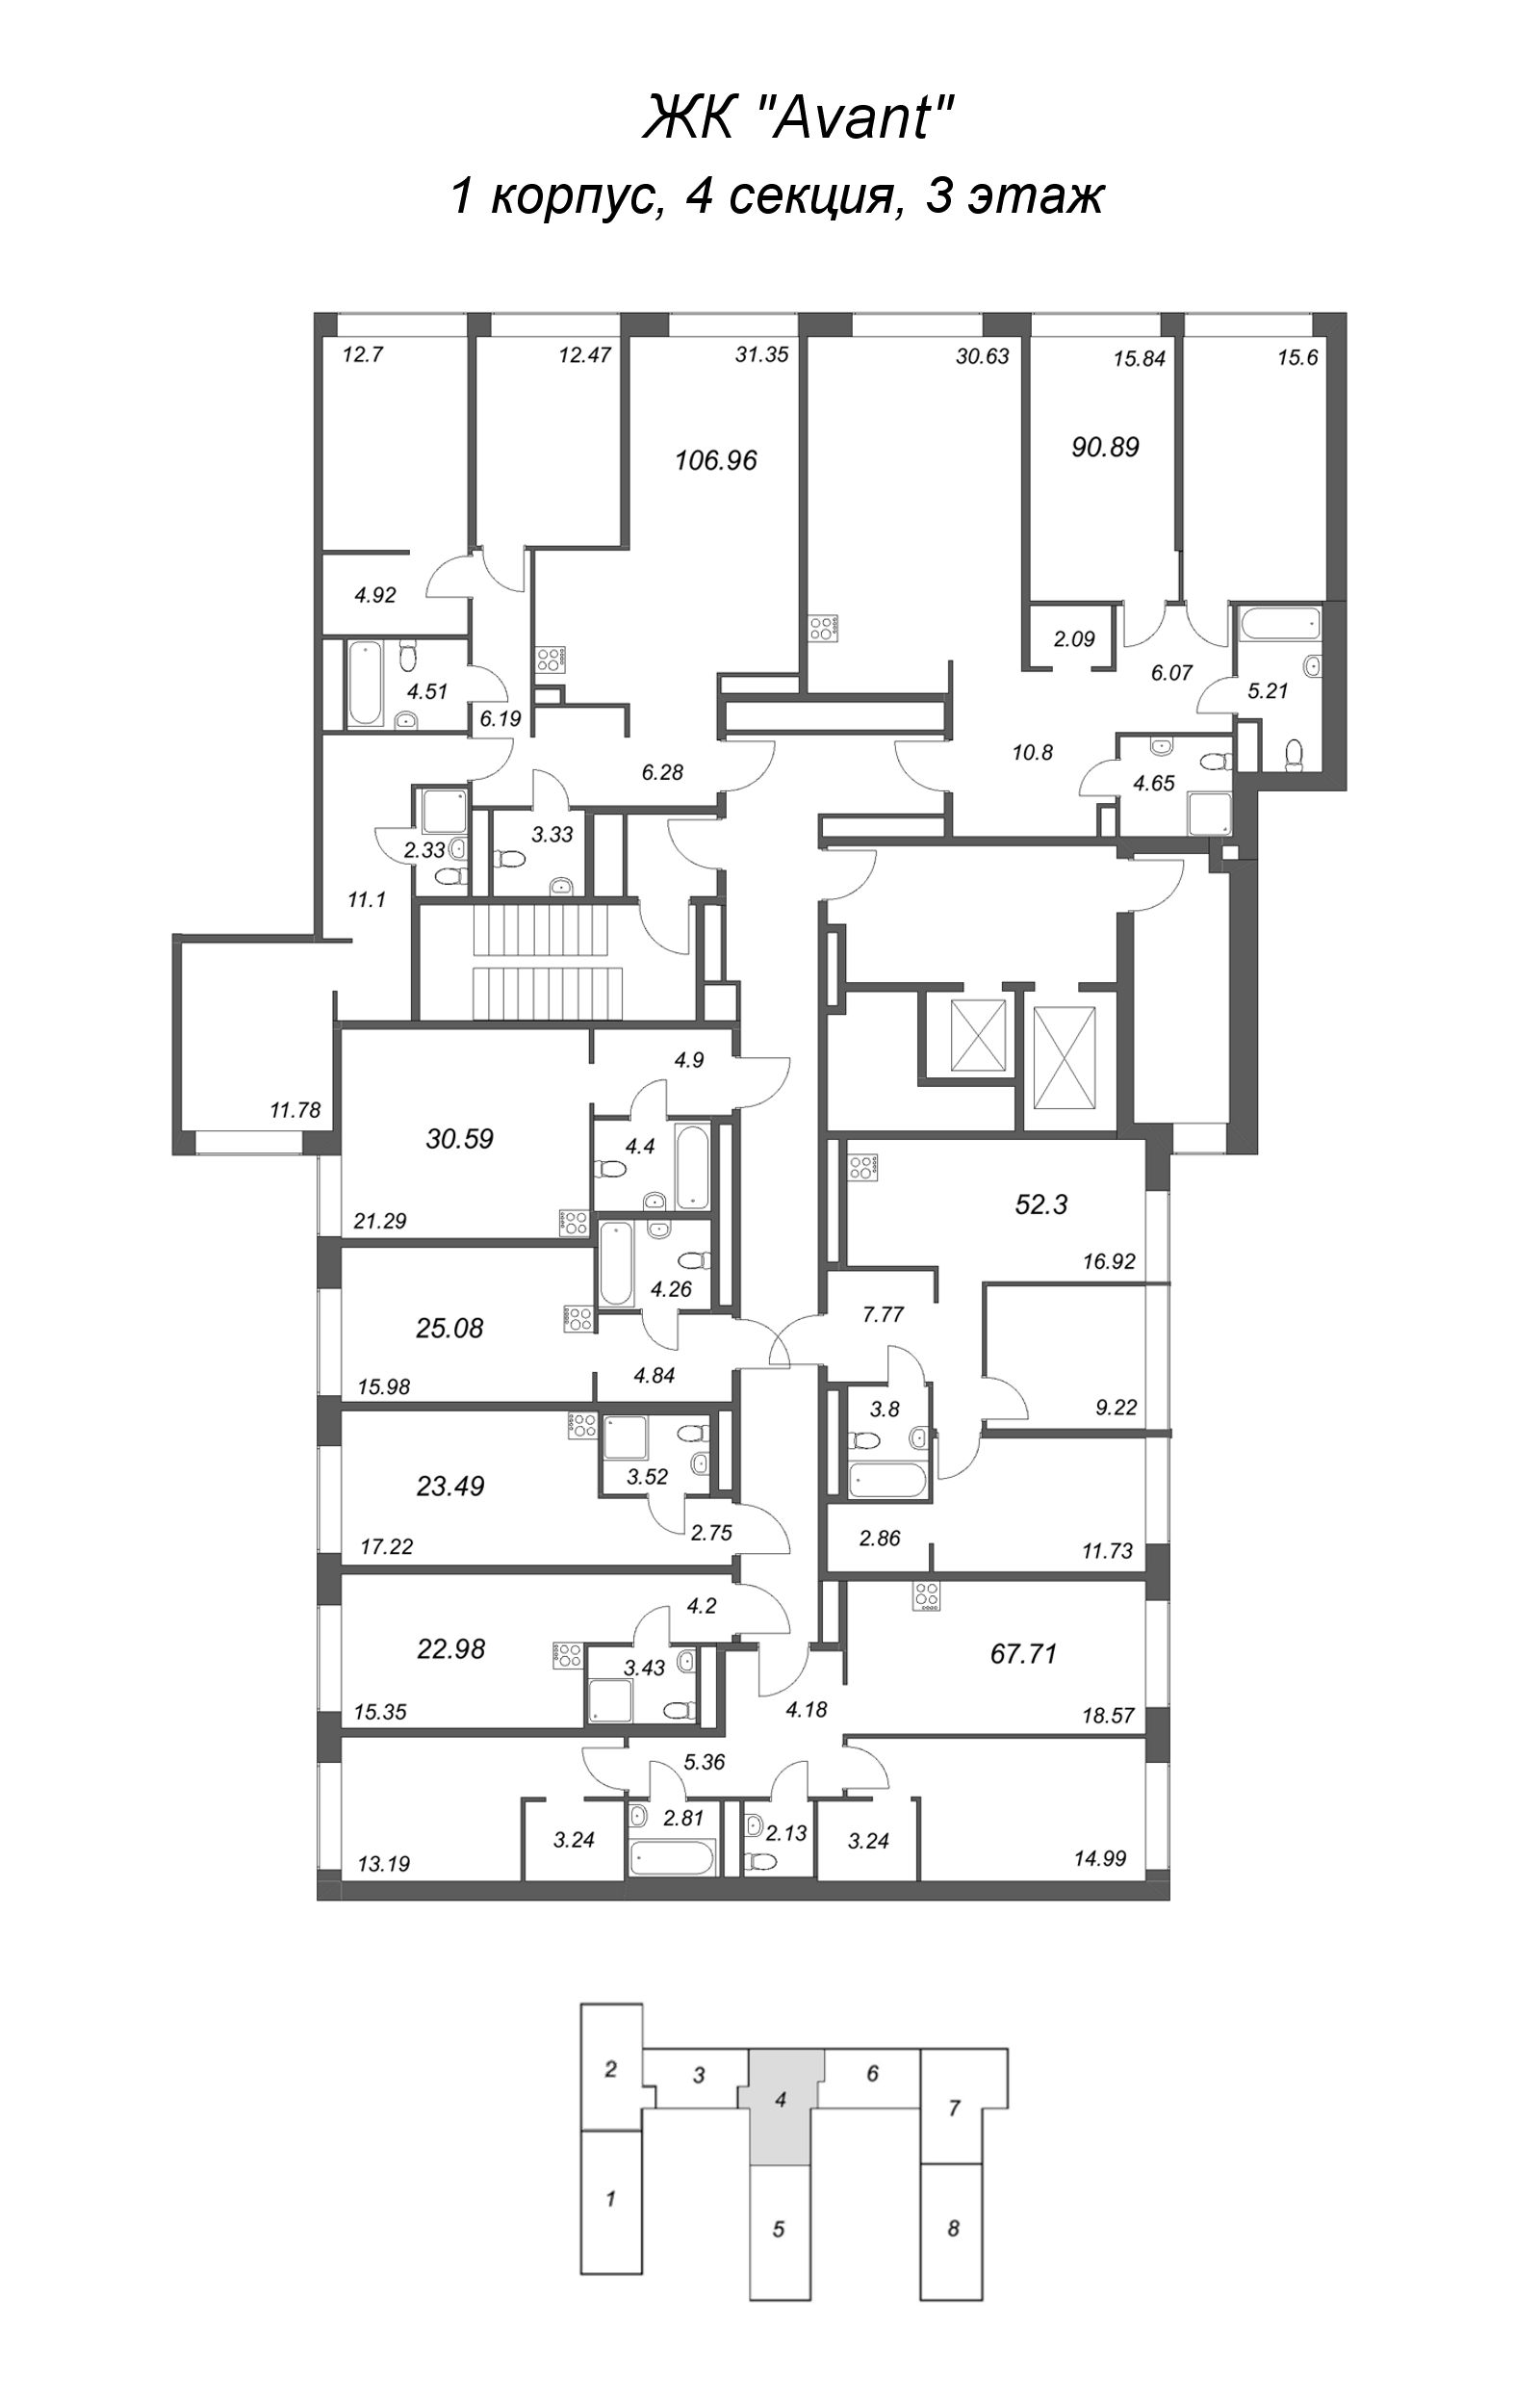 Квартира-студия, 25.08 м² в ЖК "Avant" - планировка этажа